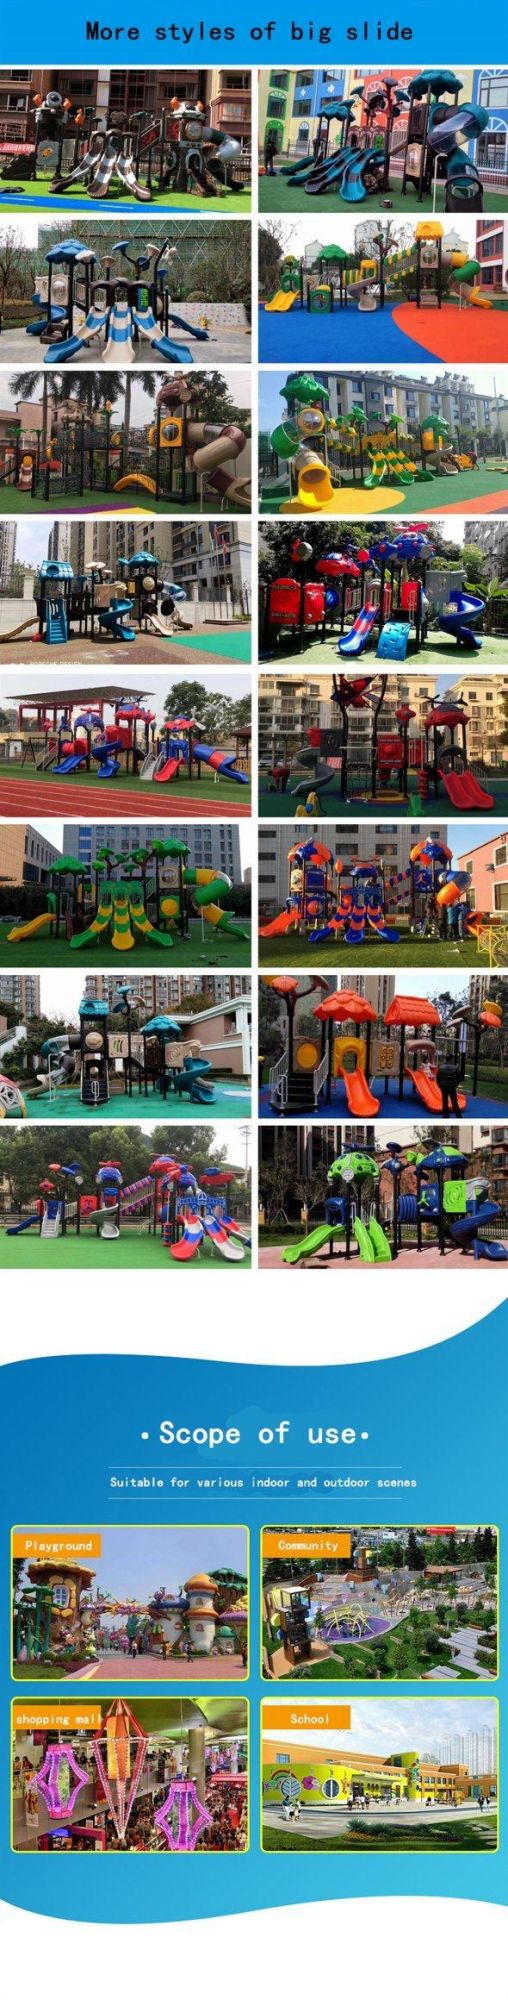 Customized Outdoor Children′s Playground Slides Kids Amusement Park Equipment